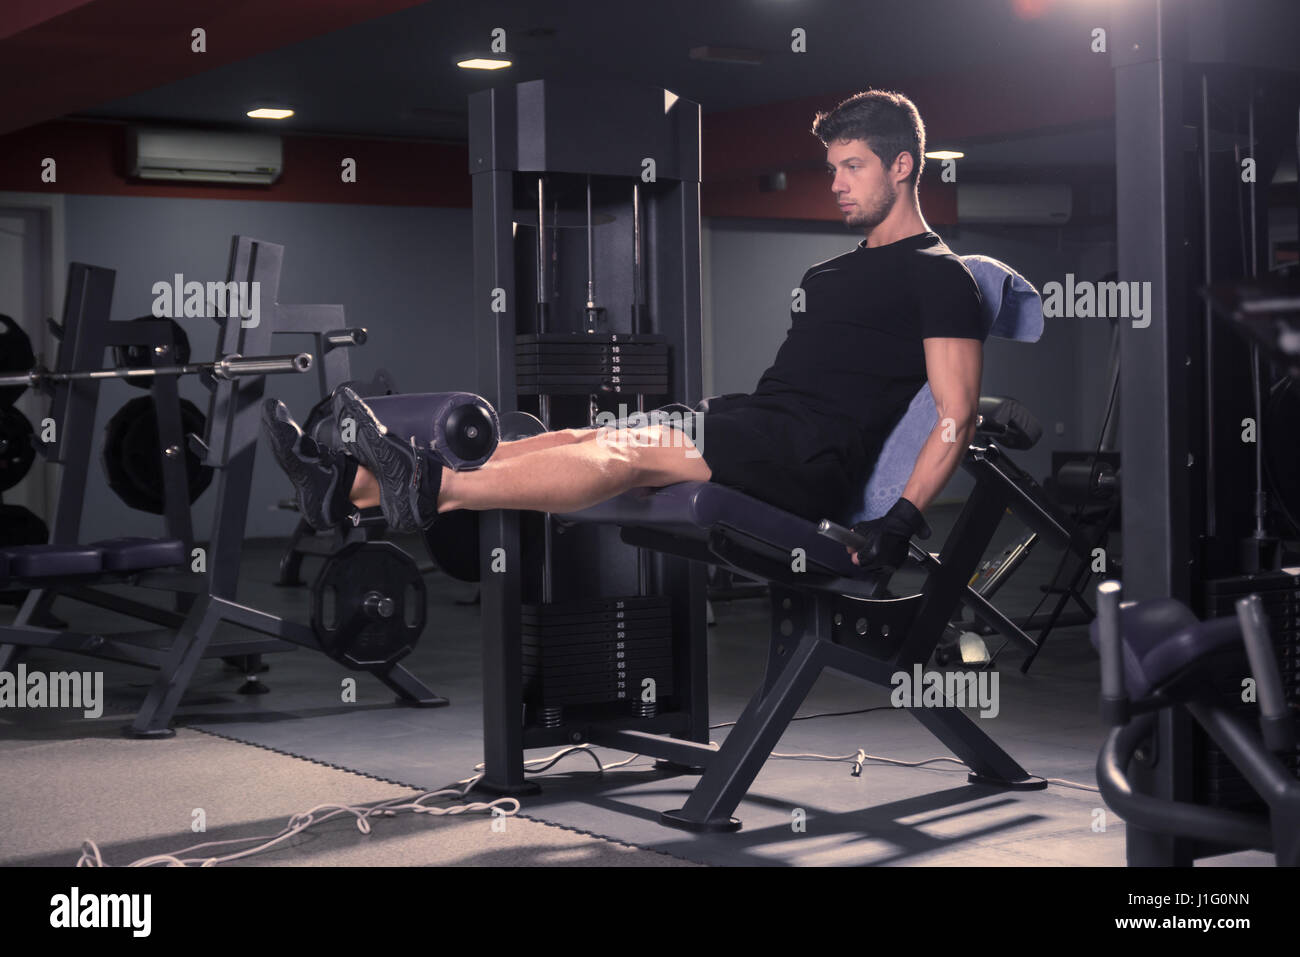 jung, fit schlank sportlicher Mann, Beinstrecker, drinnen sitzen Fitness-Studio, Fitness-Geräte. Stockfoto